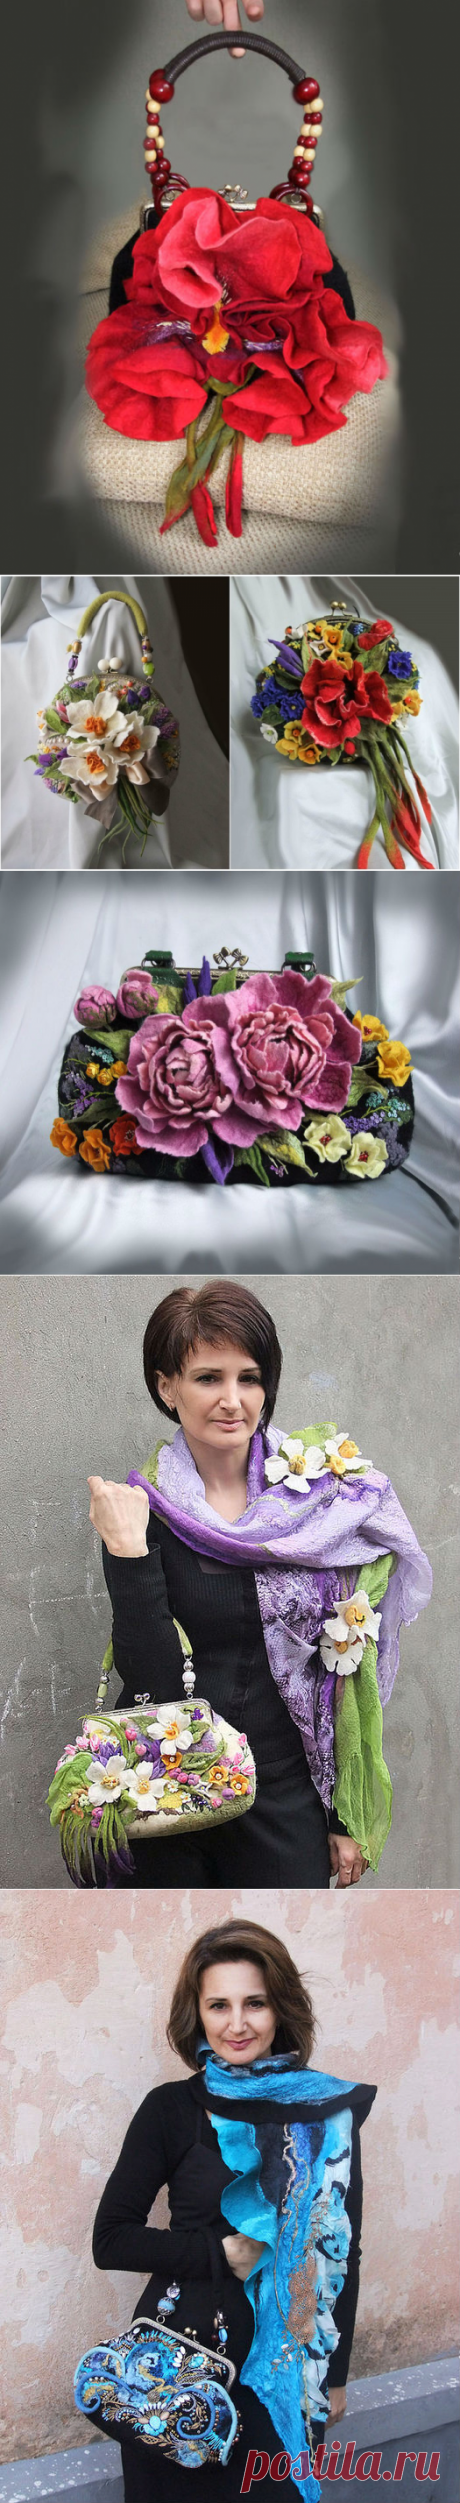 20 великолепных цветочных сумок ручной работы от мастера Ольги Гуляевой